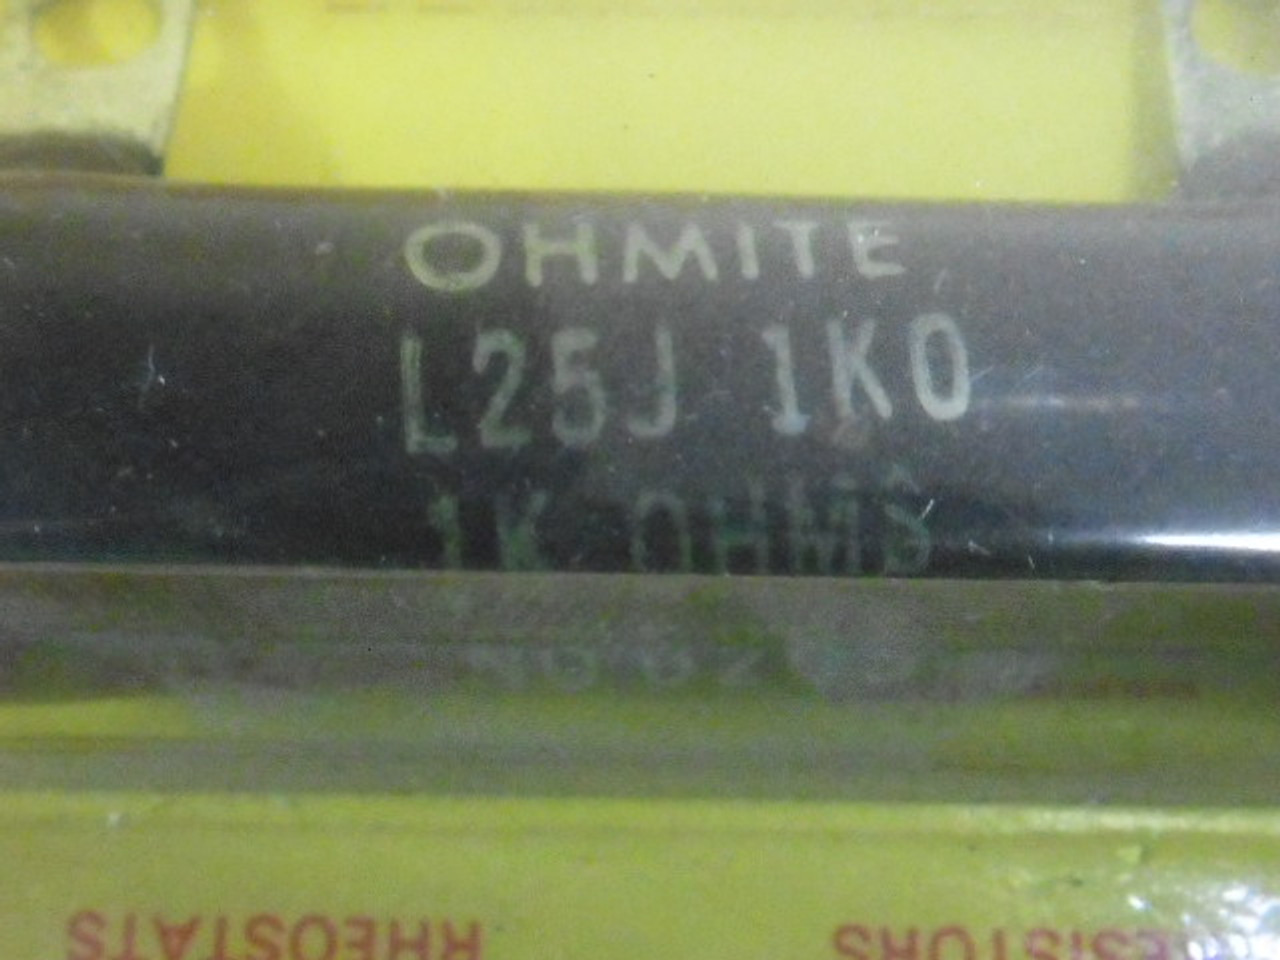 Ohmite L25J1K0 Resistor 25W 1000 Ohm ! NEW !